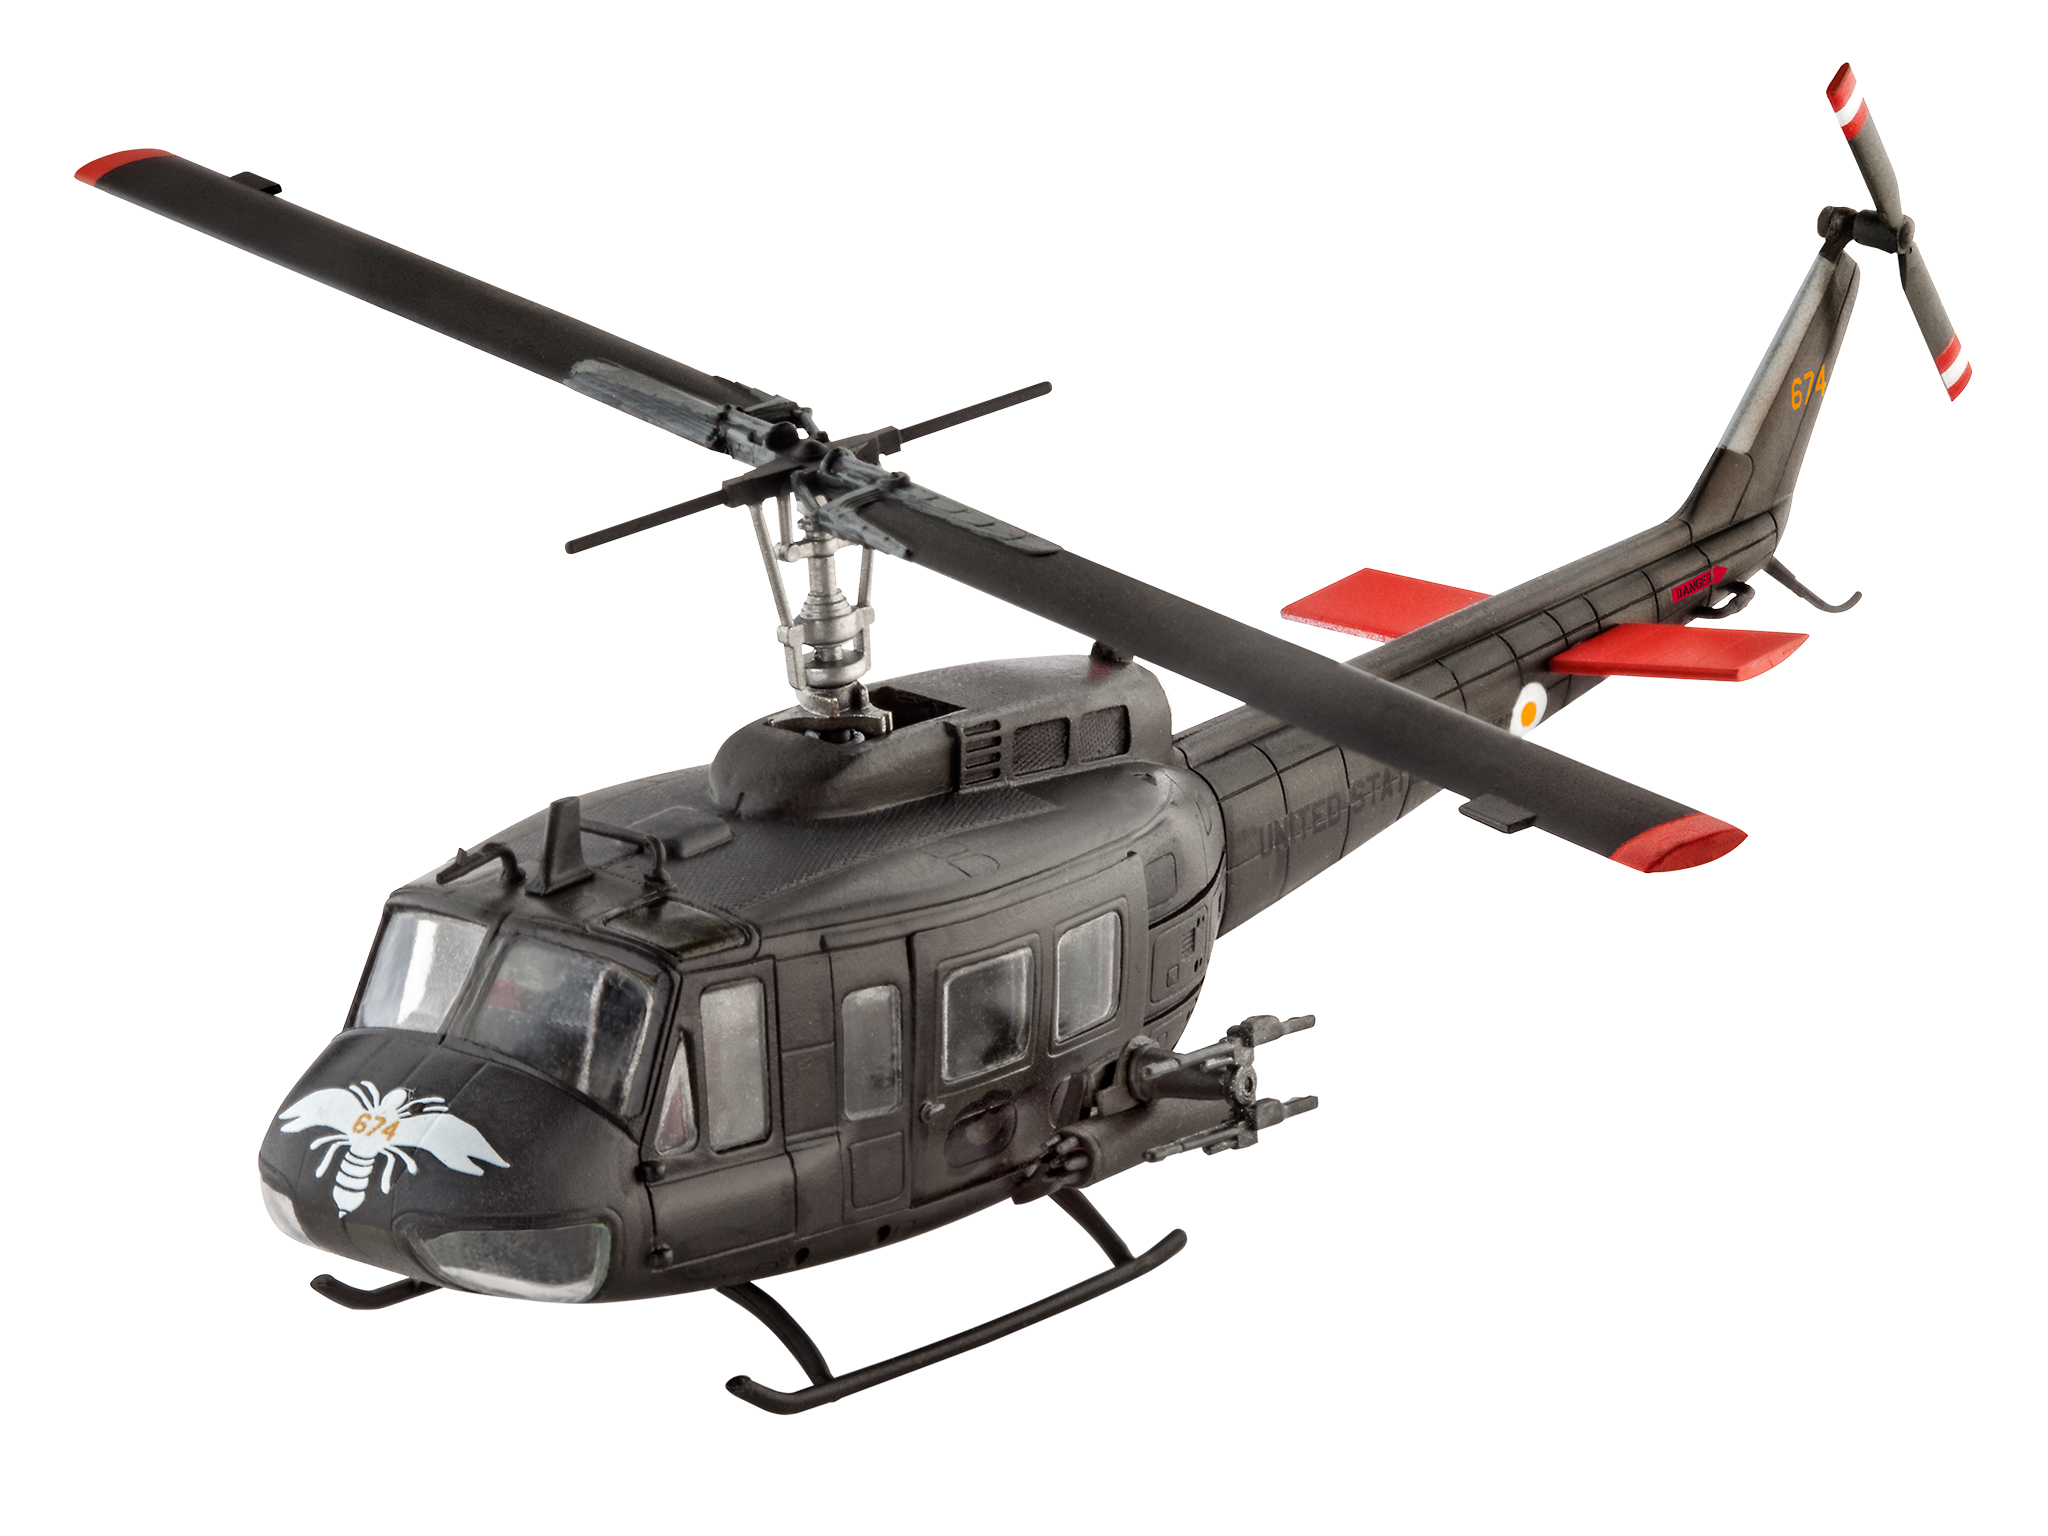 Đồ họa mạng di động Máy bay trực thăng Hình nền Desktop Hình ảnh Clip nghệ  thuật  Máy bay trực thăng png tải về  Miễn phí trong suốt Máy Bay